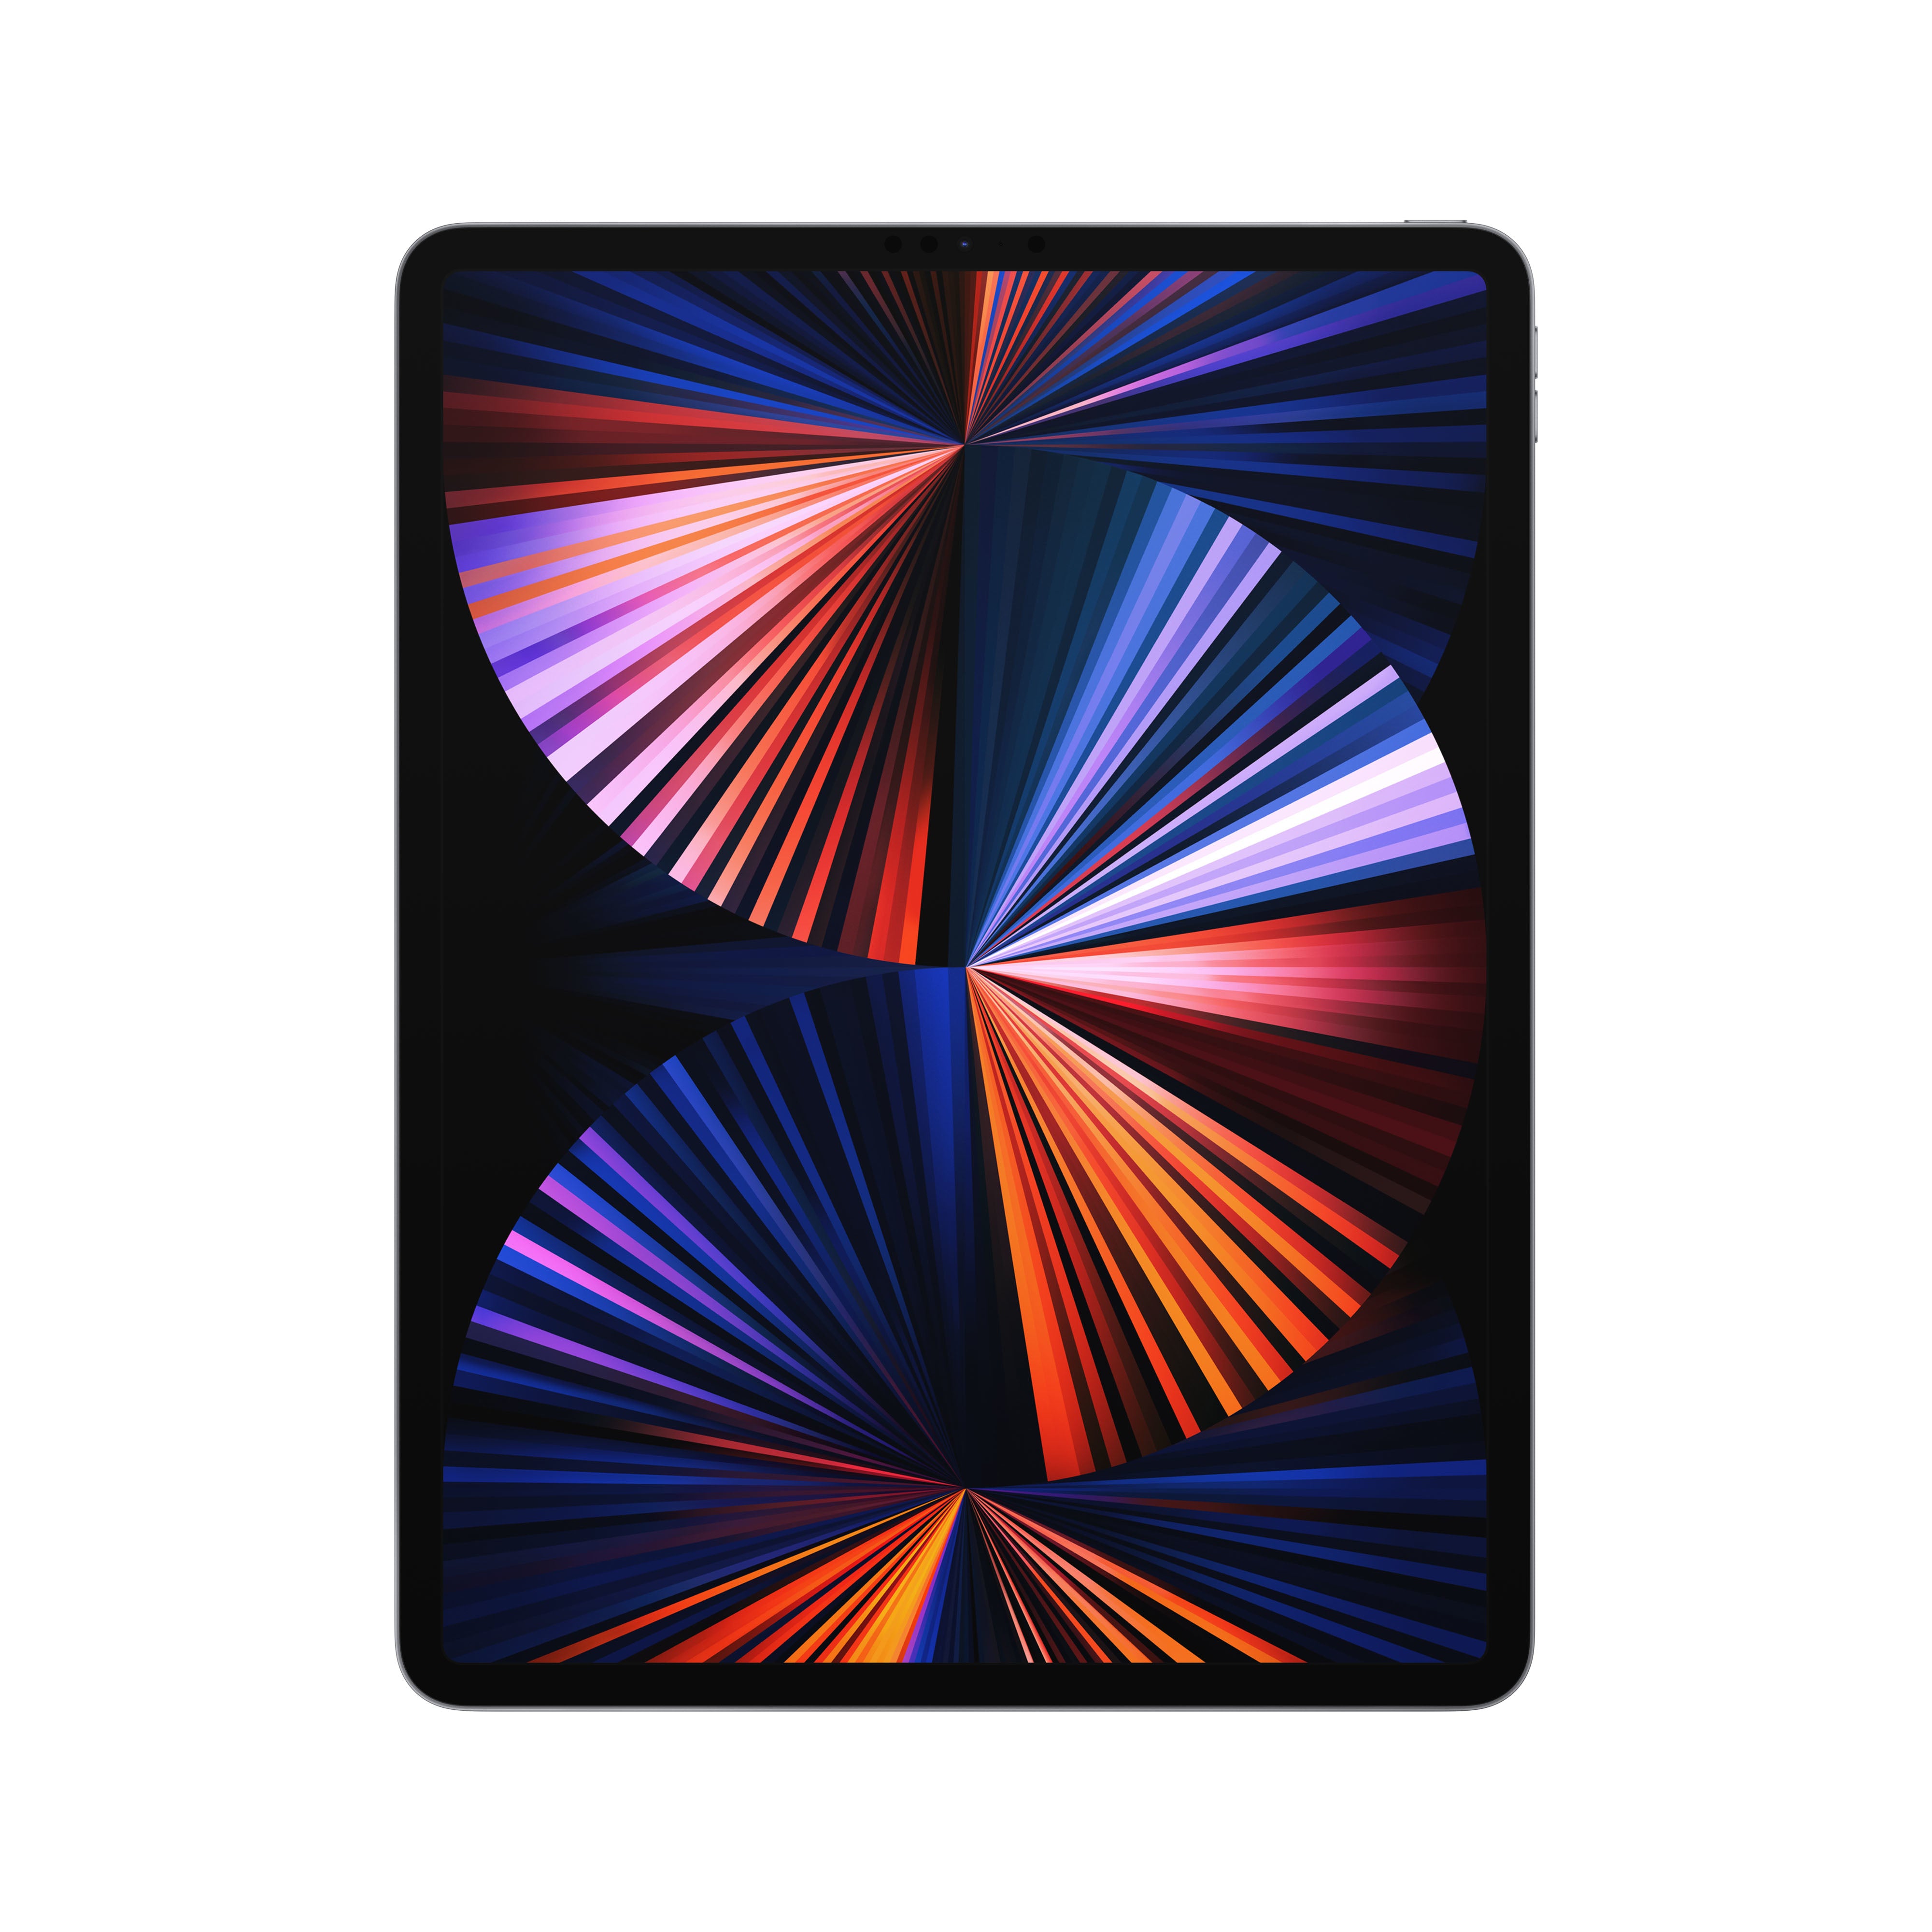 Refurbished iPad Pro 11 2018 4g 64gb Spacegrijs Als nieuw